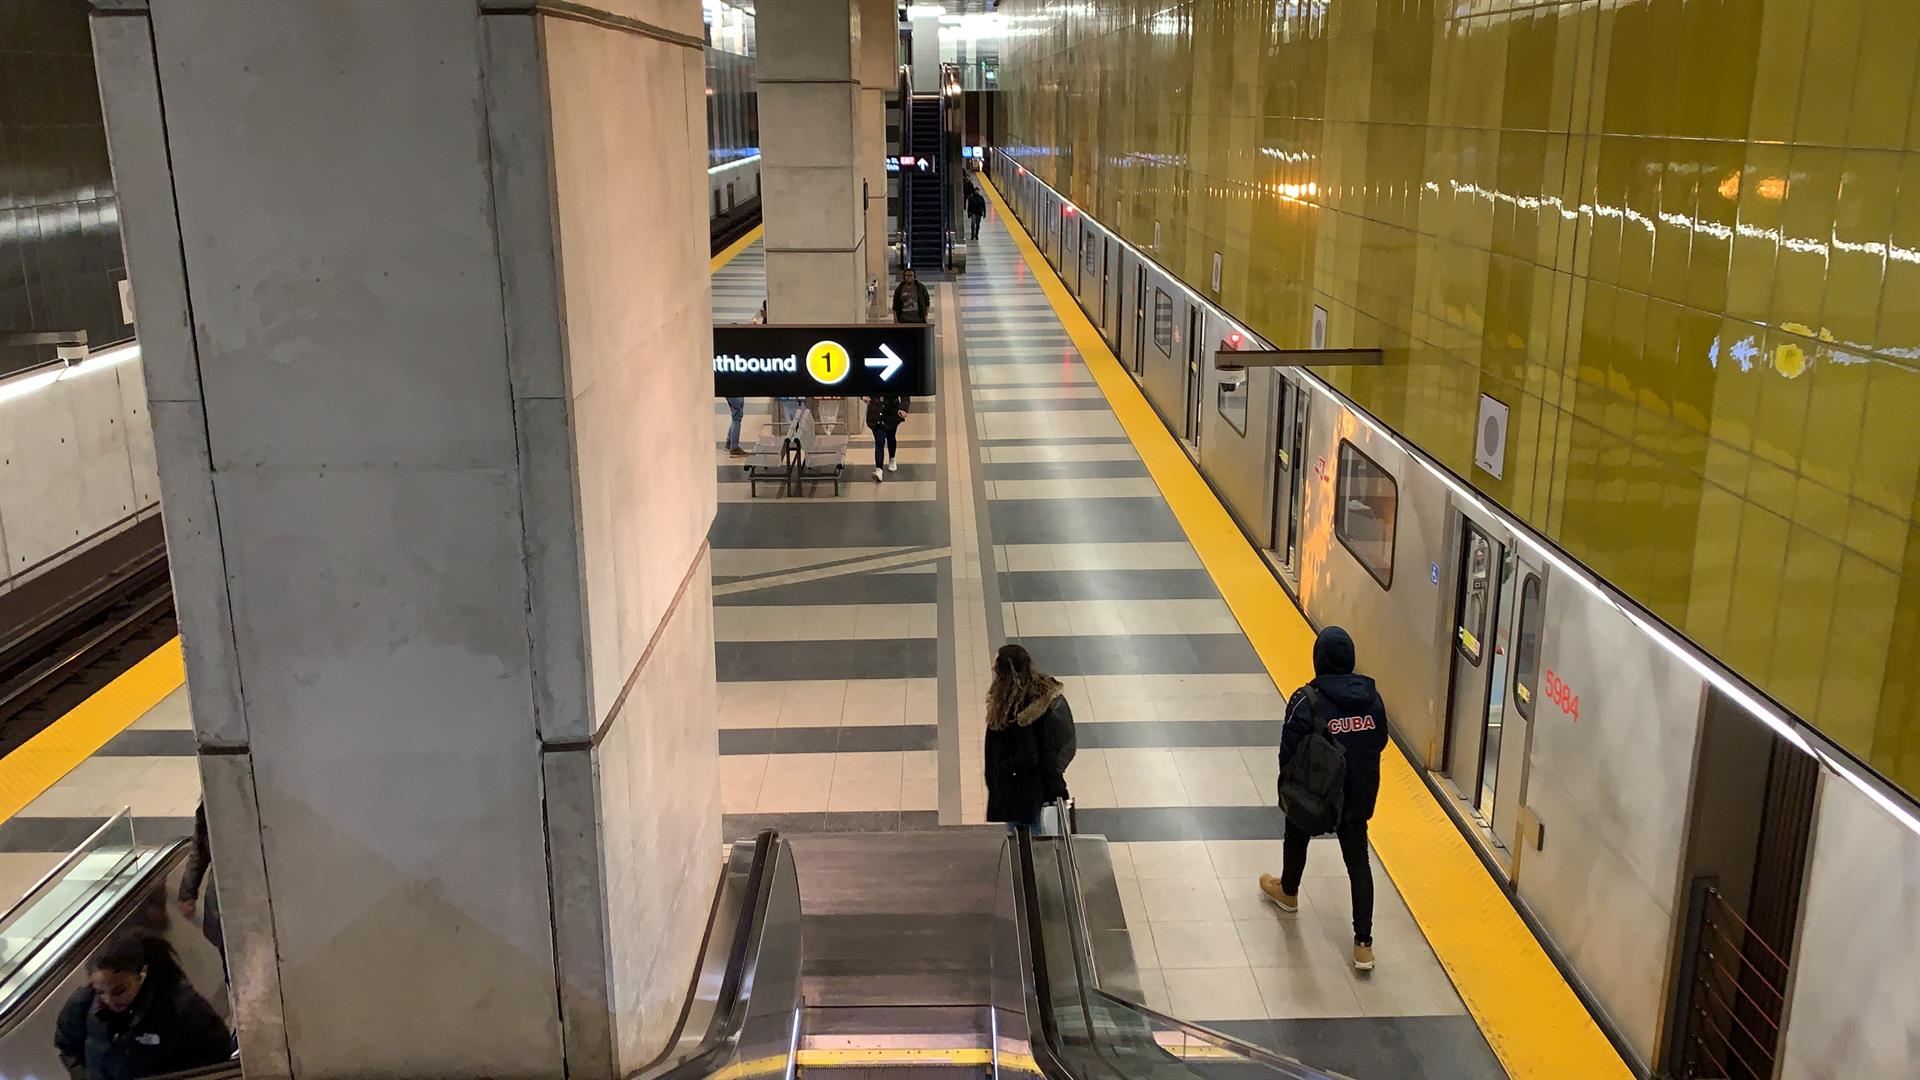 Unas personas caminan en la concurrida estación de metro de Finch West, en el área metropolitana de Toronto, Ontario (Canadá). Imagen de archivo. EFE/ Osvaldo Ponce
